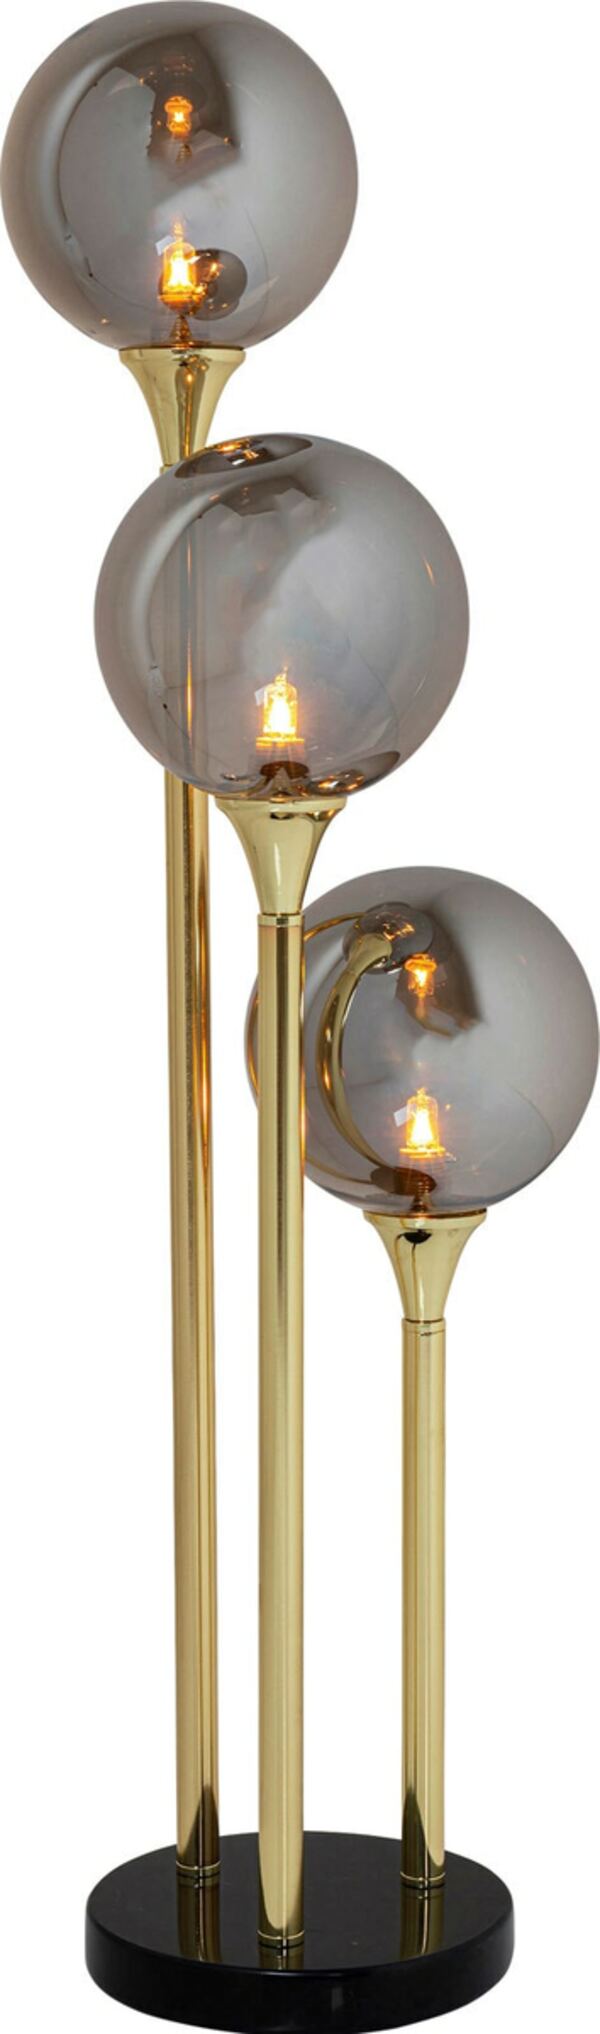 Bild 1 von KARE DESIGN Retrofit Stehlampe AL CAPONE TRE 82 cm goldfarbig - H. 82 cm - 3 runde Lampenschirme aus getöntem Glas